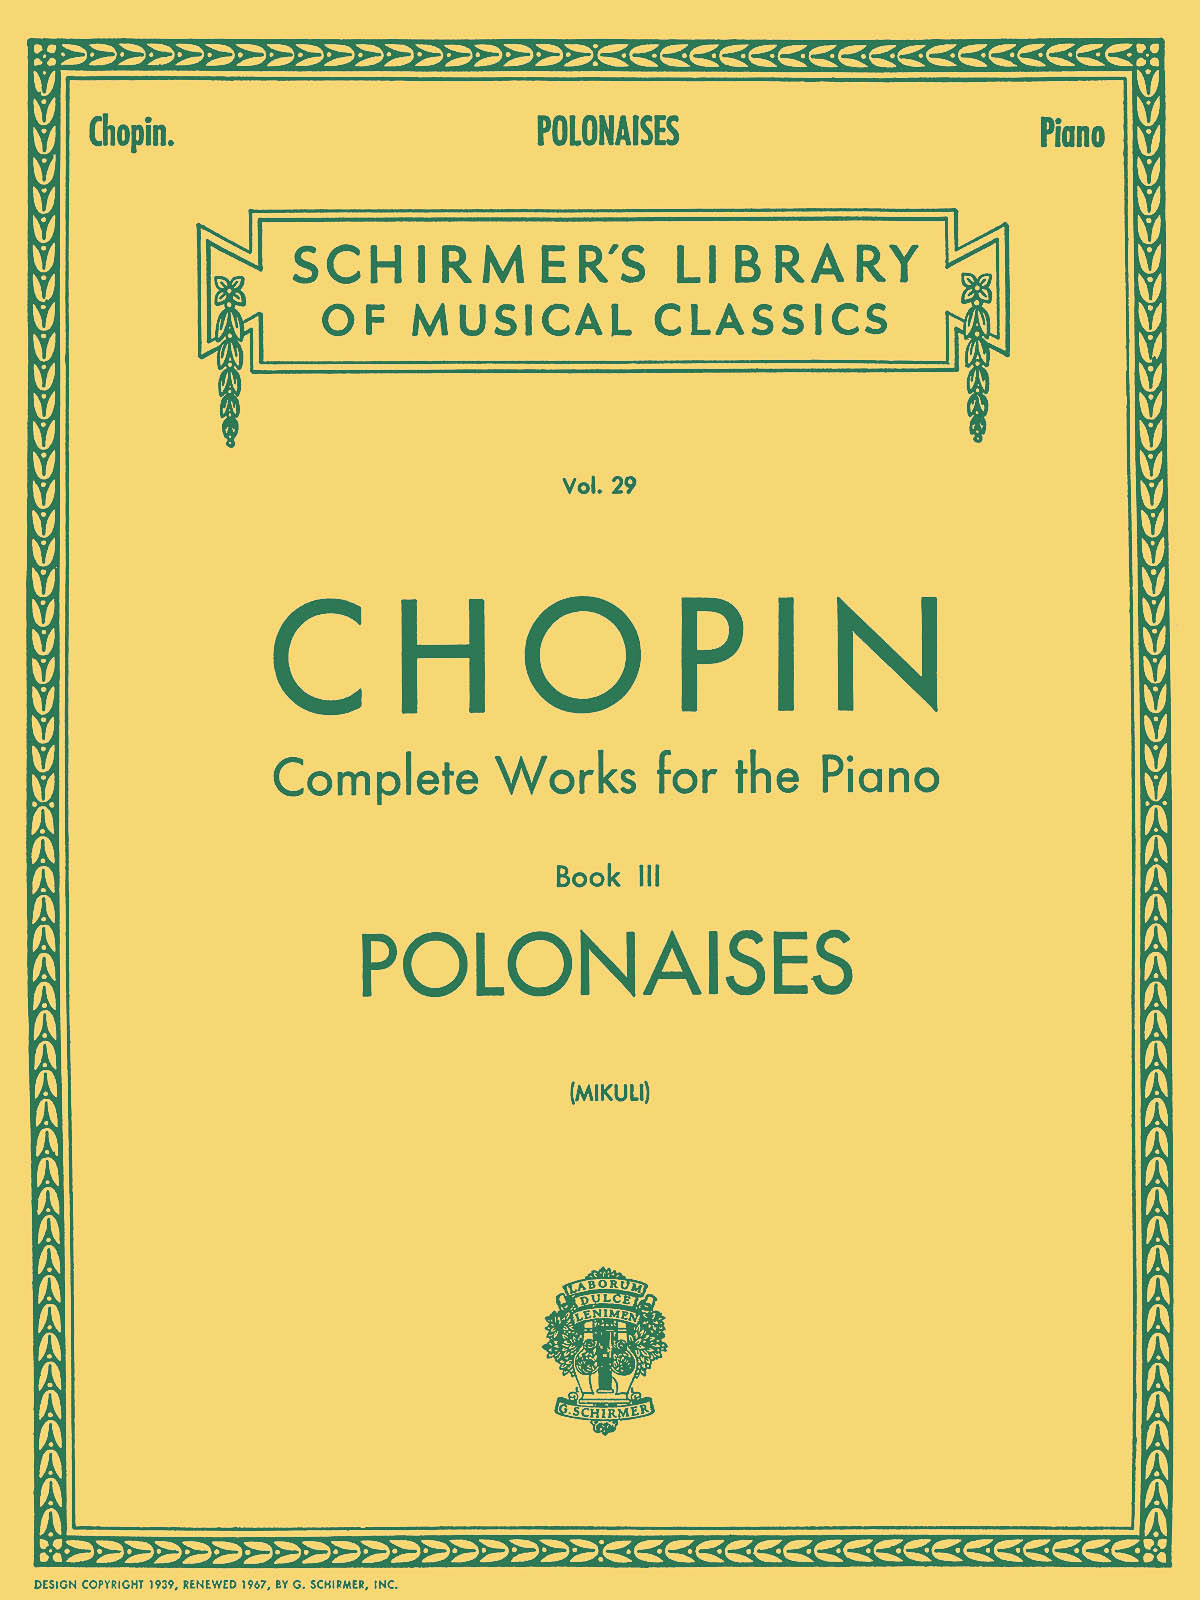 Frédéric Chopin: Polonaises